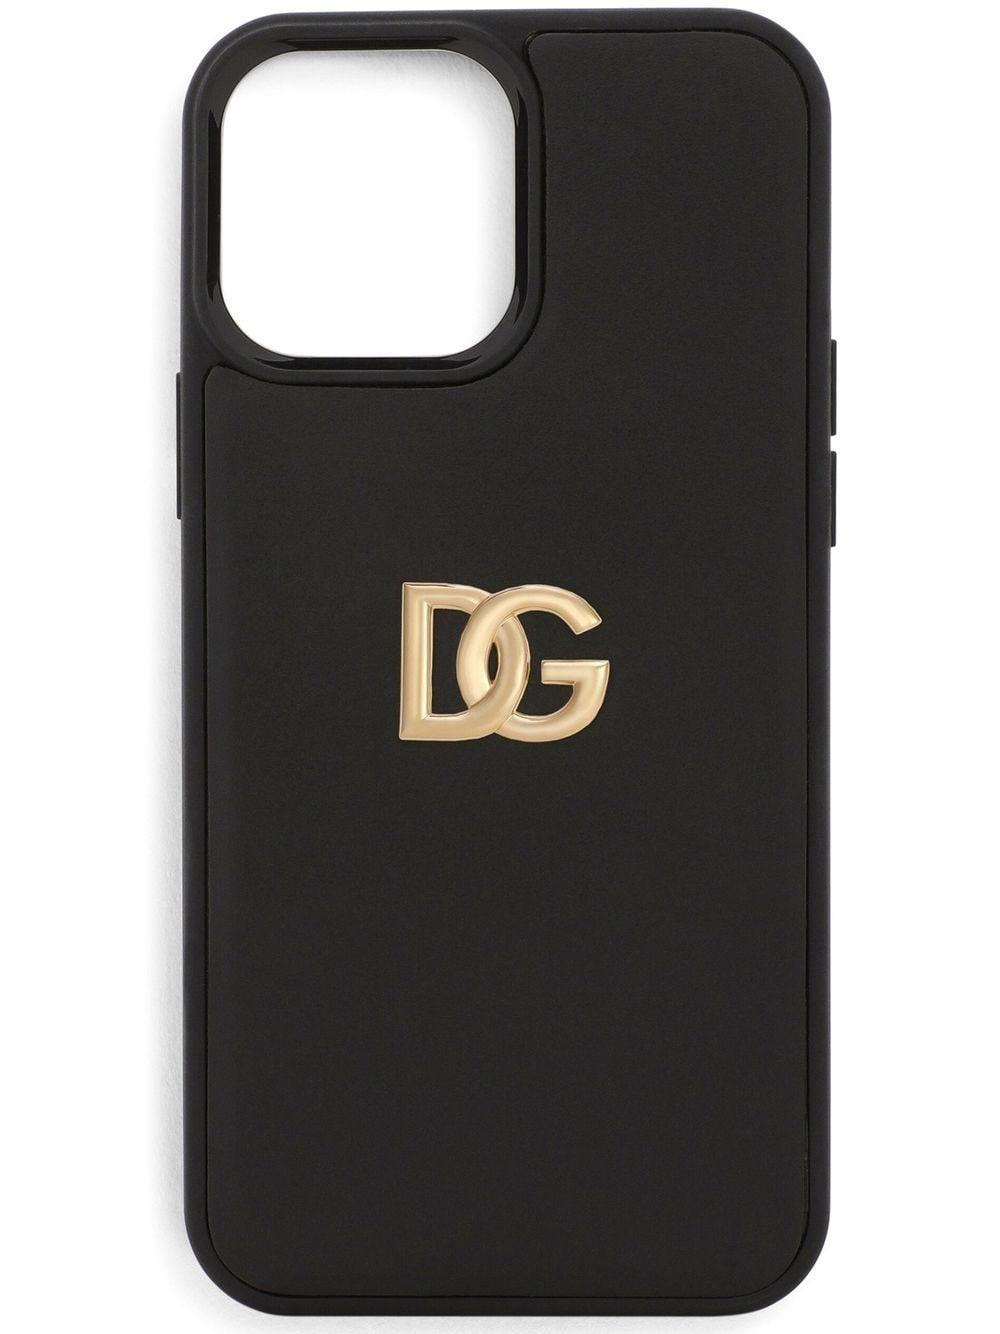 bizon chaos Wardianzaak Dolce & Gabbana Dg Iphone 13 Pro Max Case in Black | Lyst